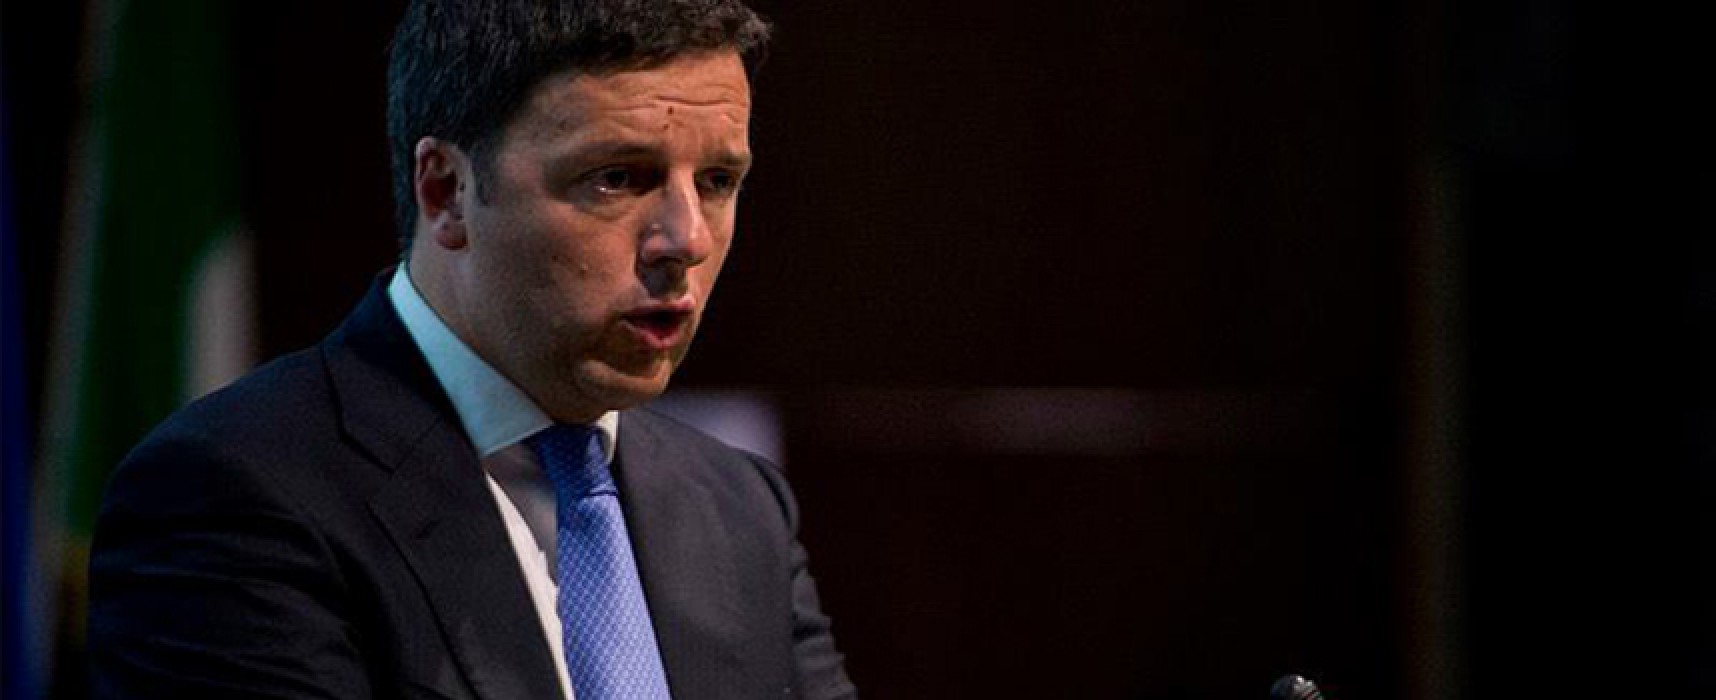 Spina-Pd, interviene Matteo Renzi: “400 iscritti in blocco? Non è giusto, lecito e legittimo”